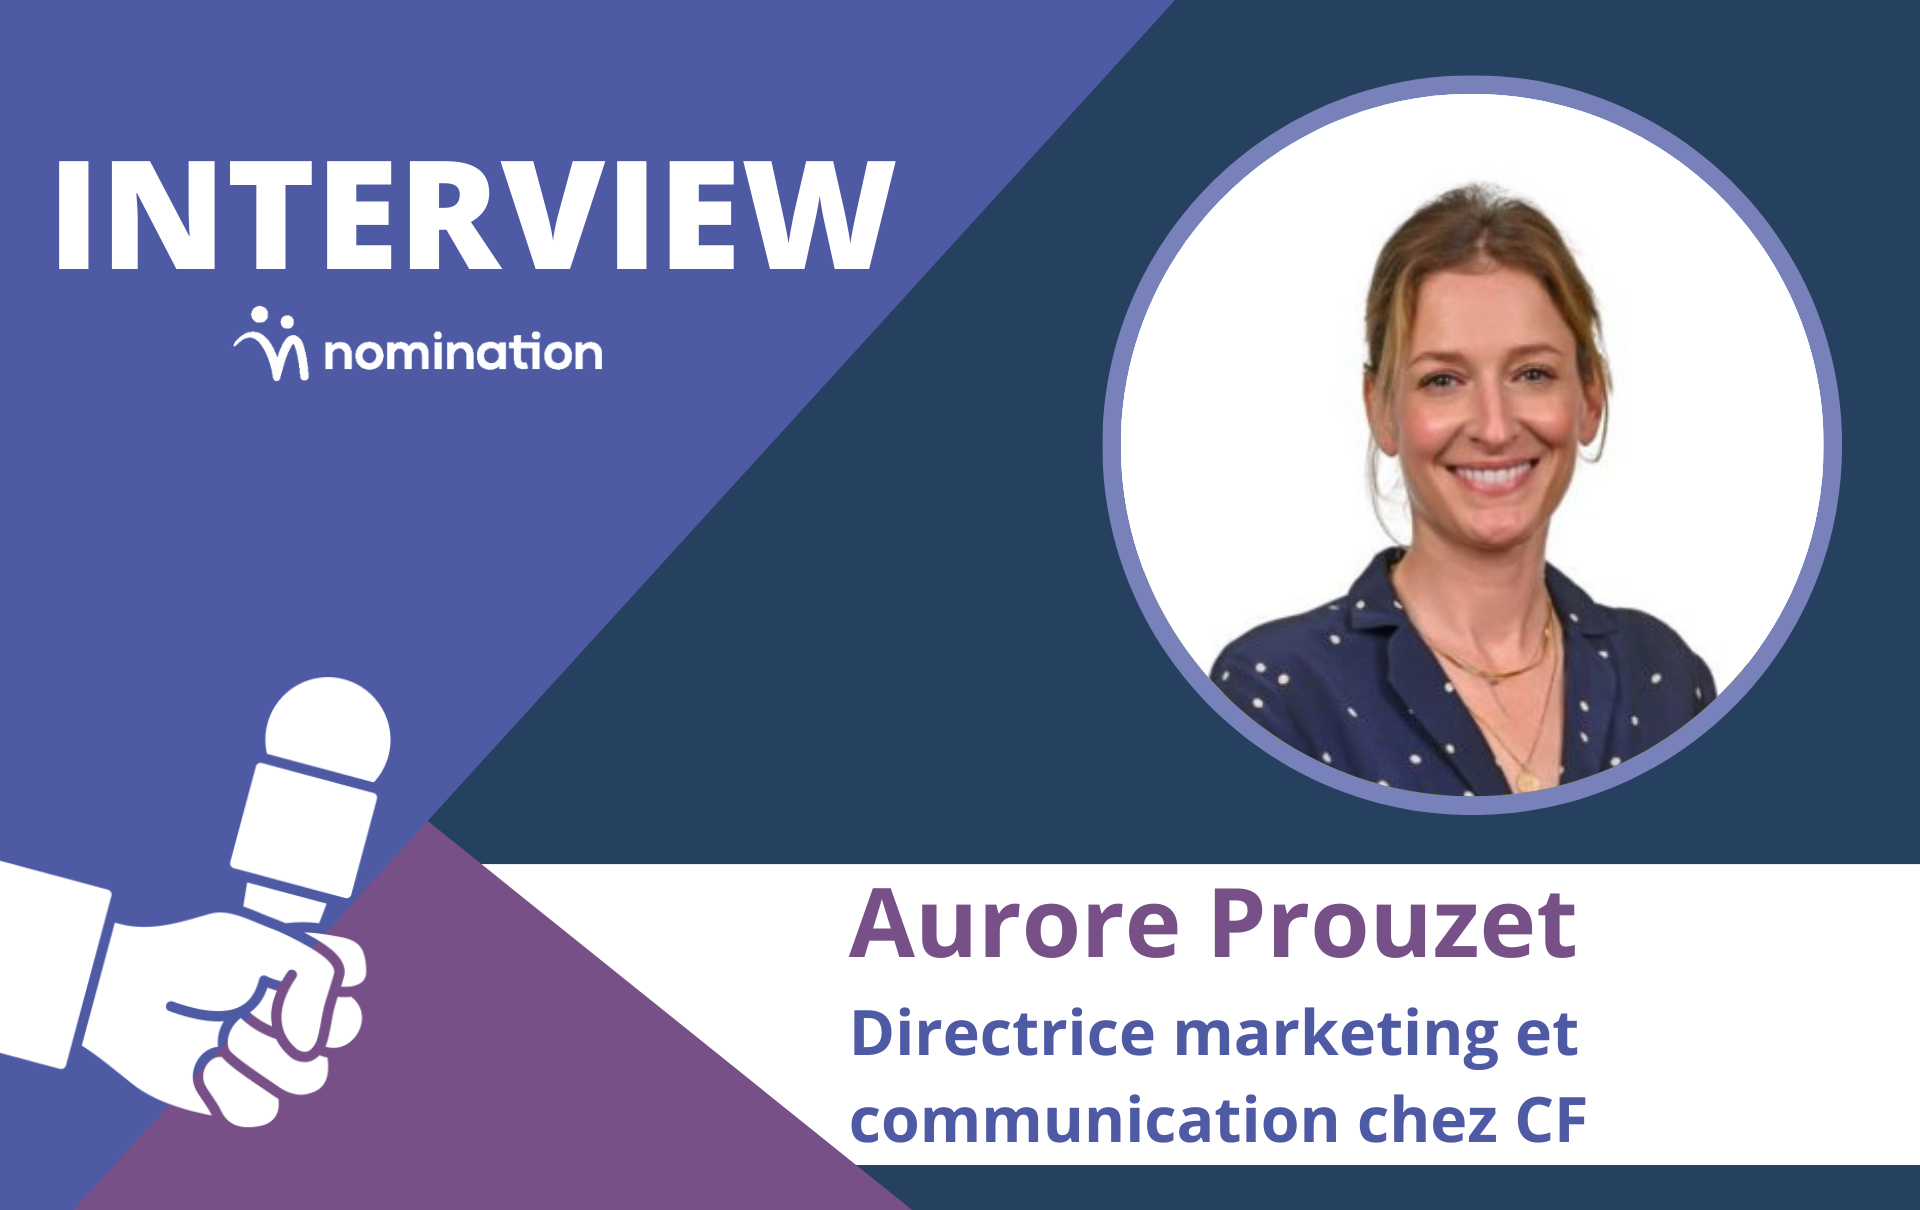 Aurore Prouzet, directrice marketing et communication chez CF (Compagnie Fiduciaire)